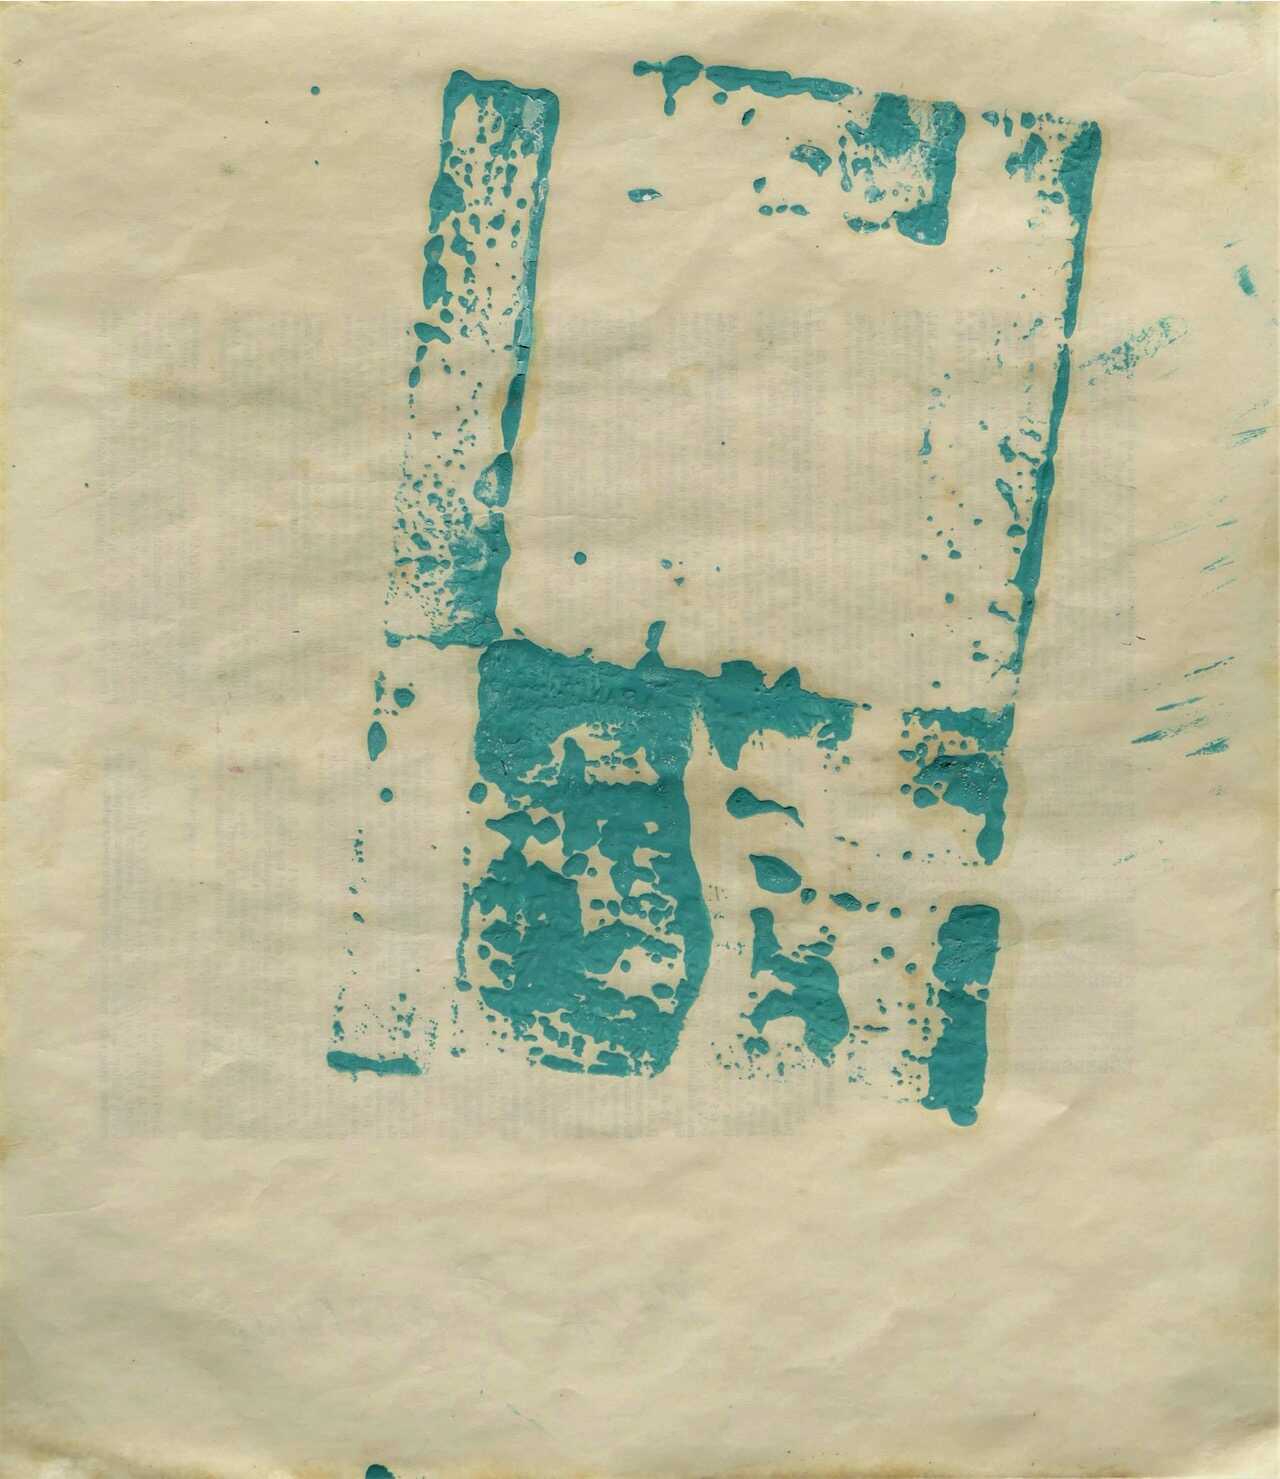 éponge à la gouache, 1967 gouache sur papier 32,1 x 27,9 cm